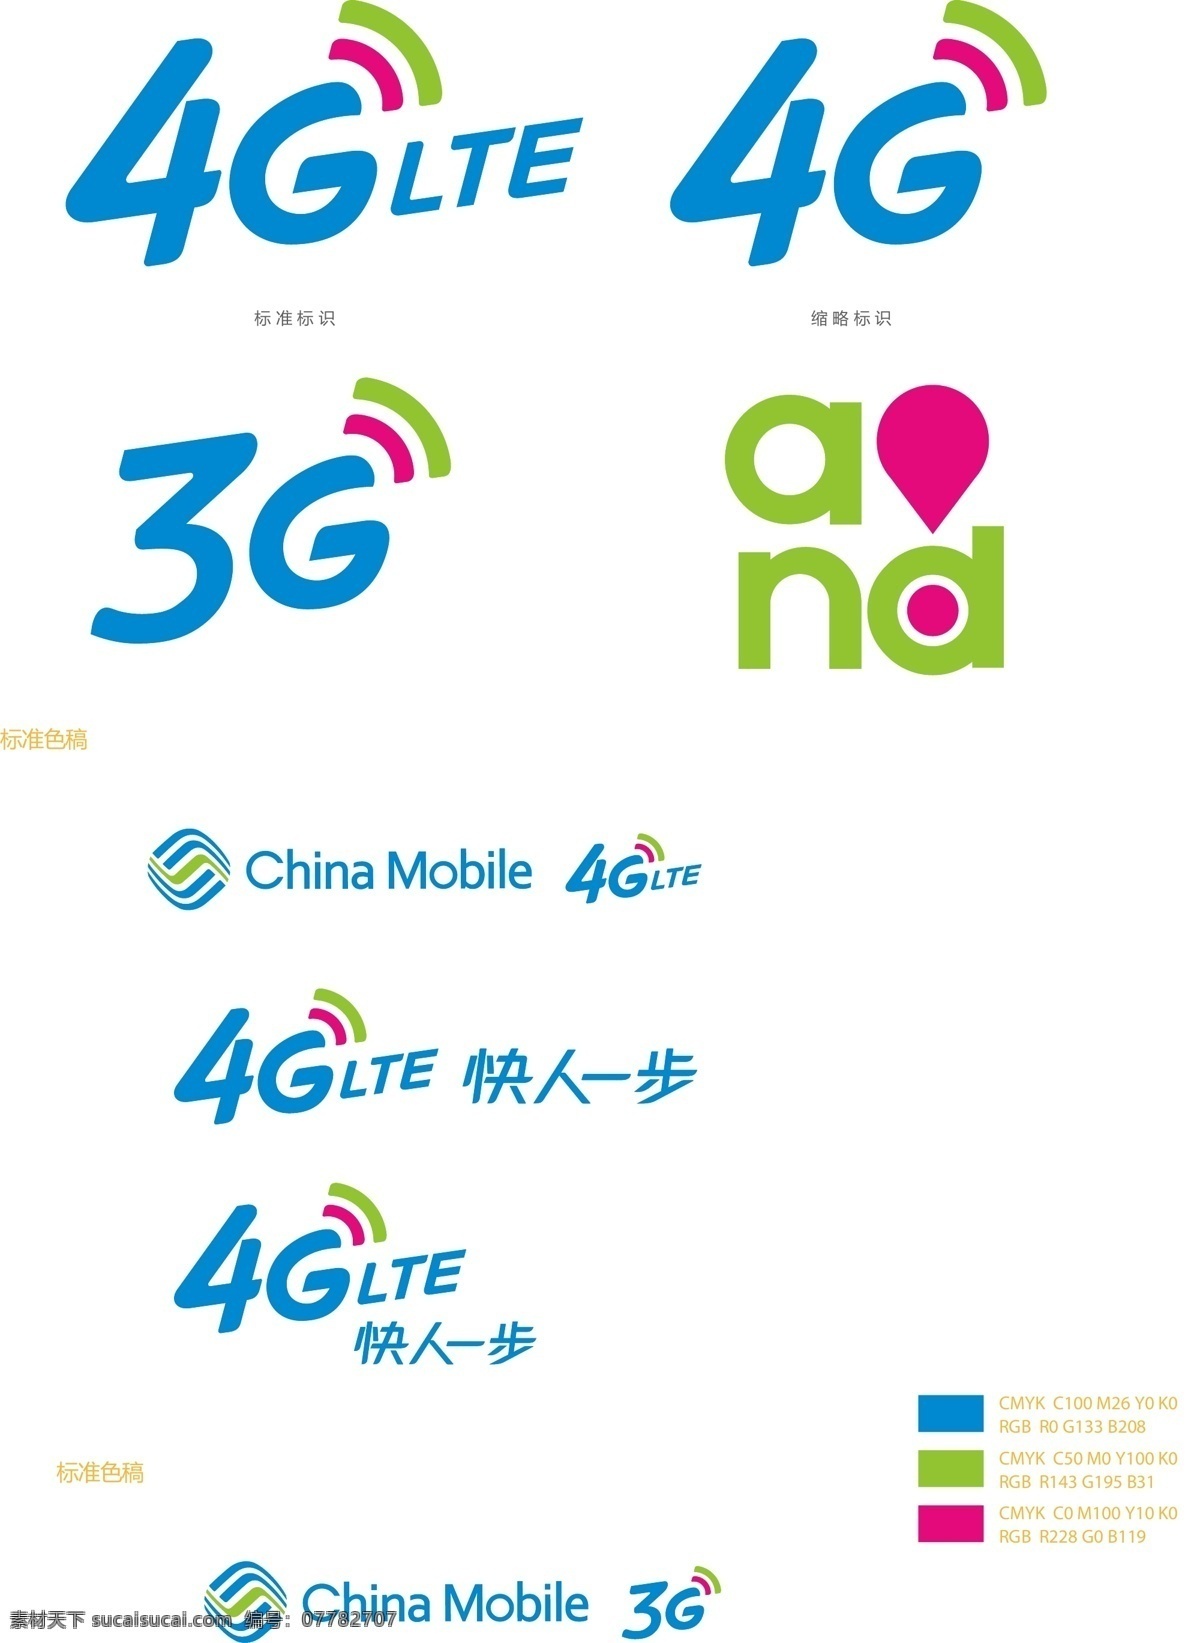 中国移动3g 4g 中国移动 3g 4glte 新3g 新组合 和品牌 企业 logo 标志 标识标志图标 矢量